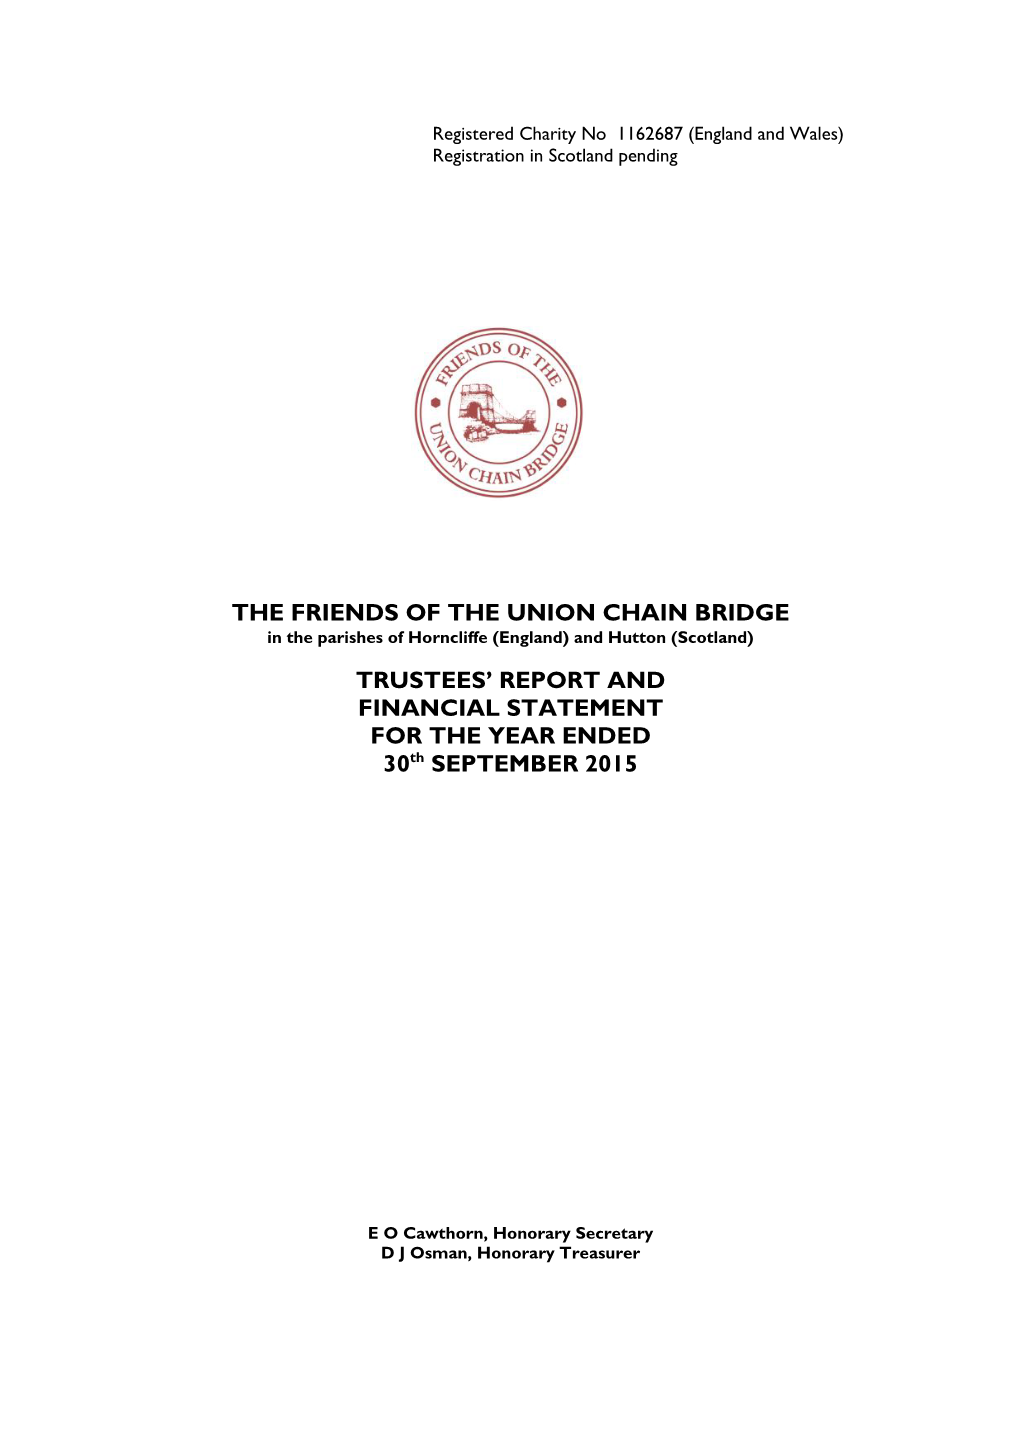 Friends-UCB-Annual-Report-2015.Pdf